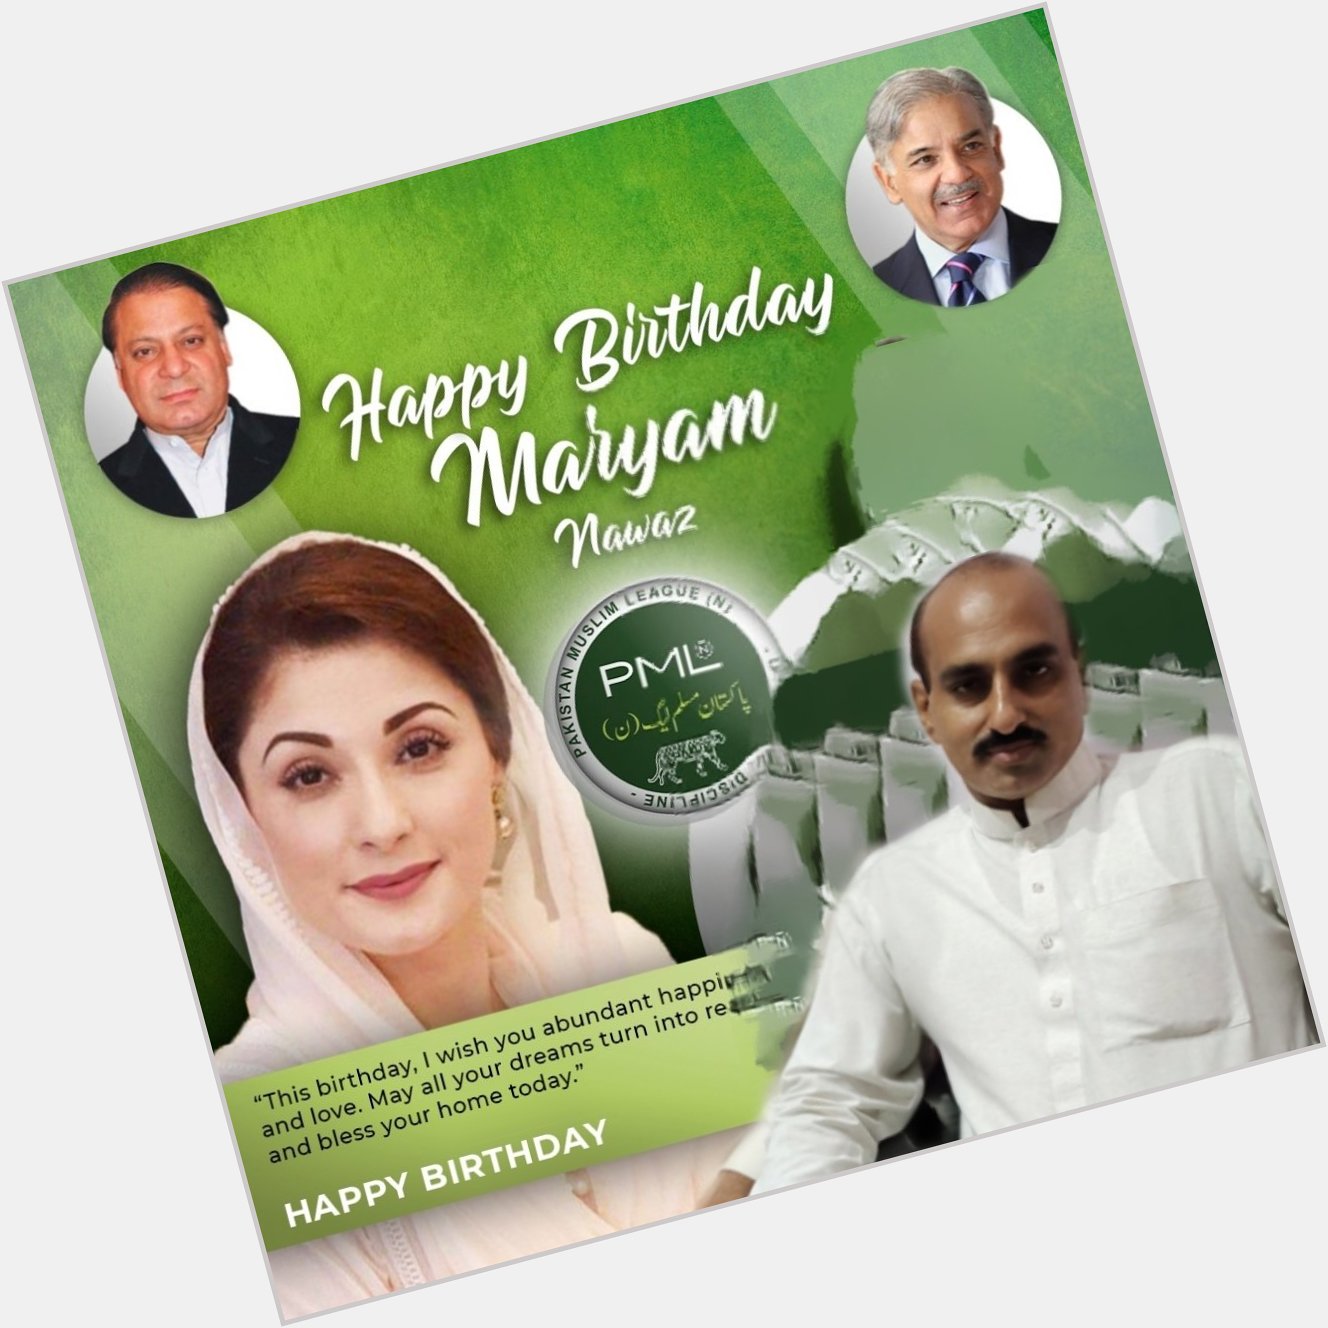 Happy birthday day Maryam nawaz sharif 